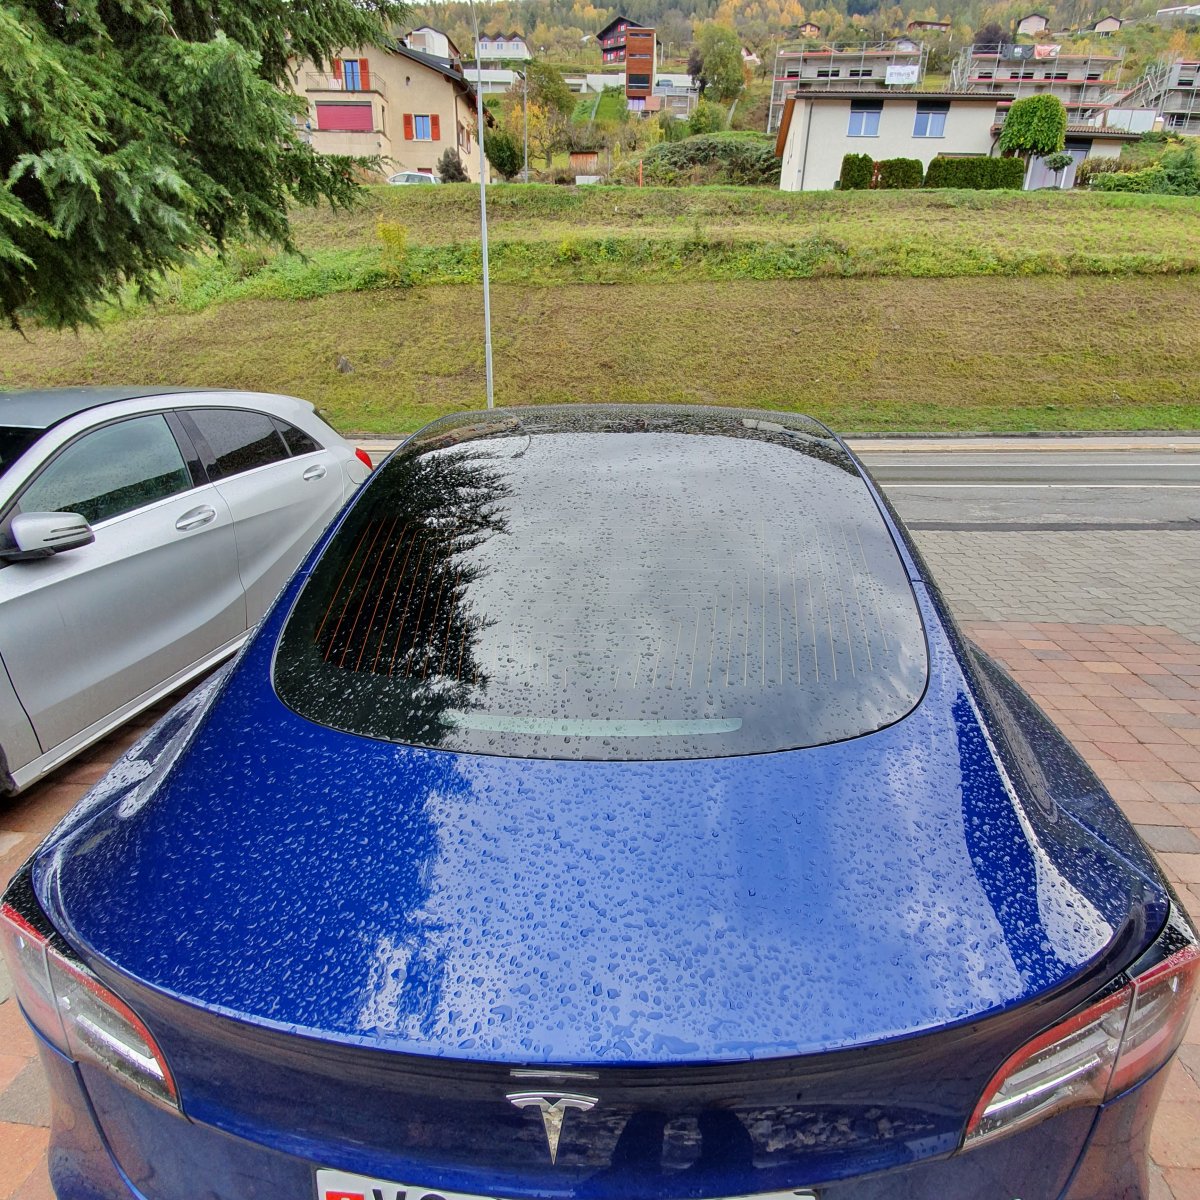 Miroir du Pare soleil cassé - Tesla Model 3 - Forum Automobile Propre